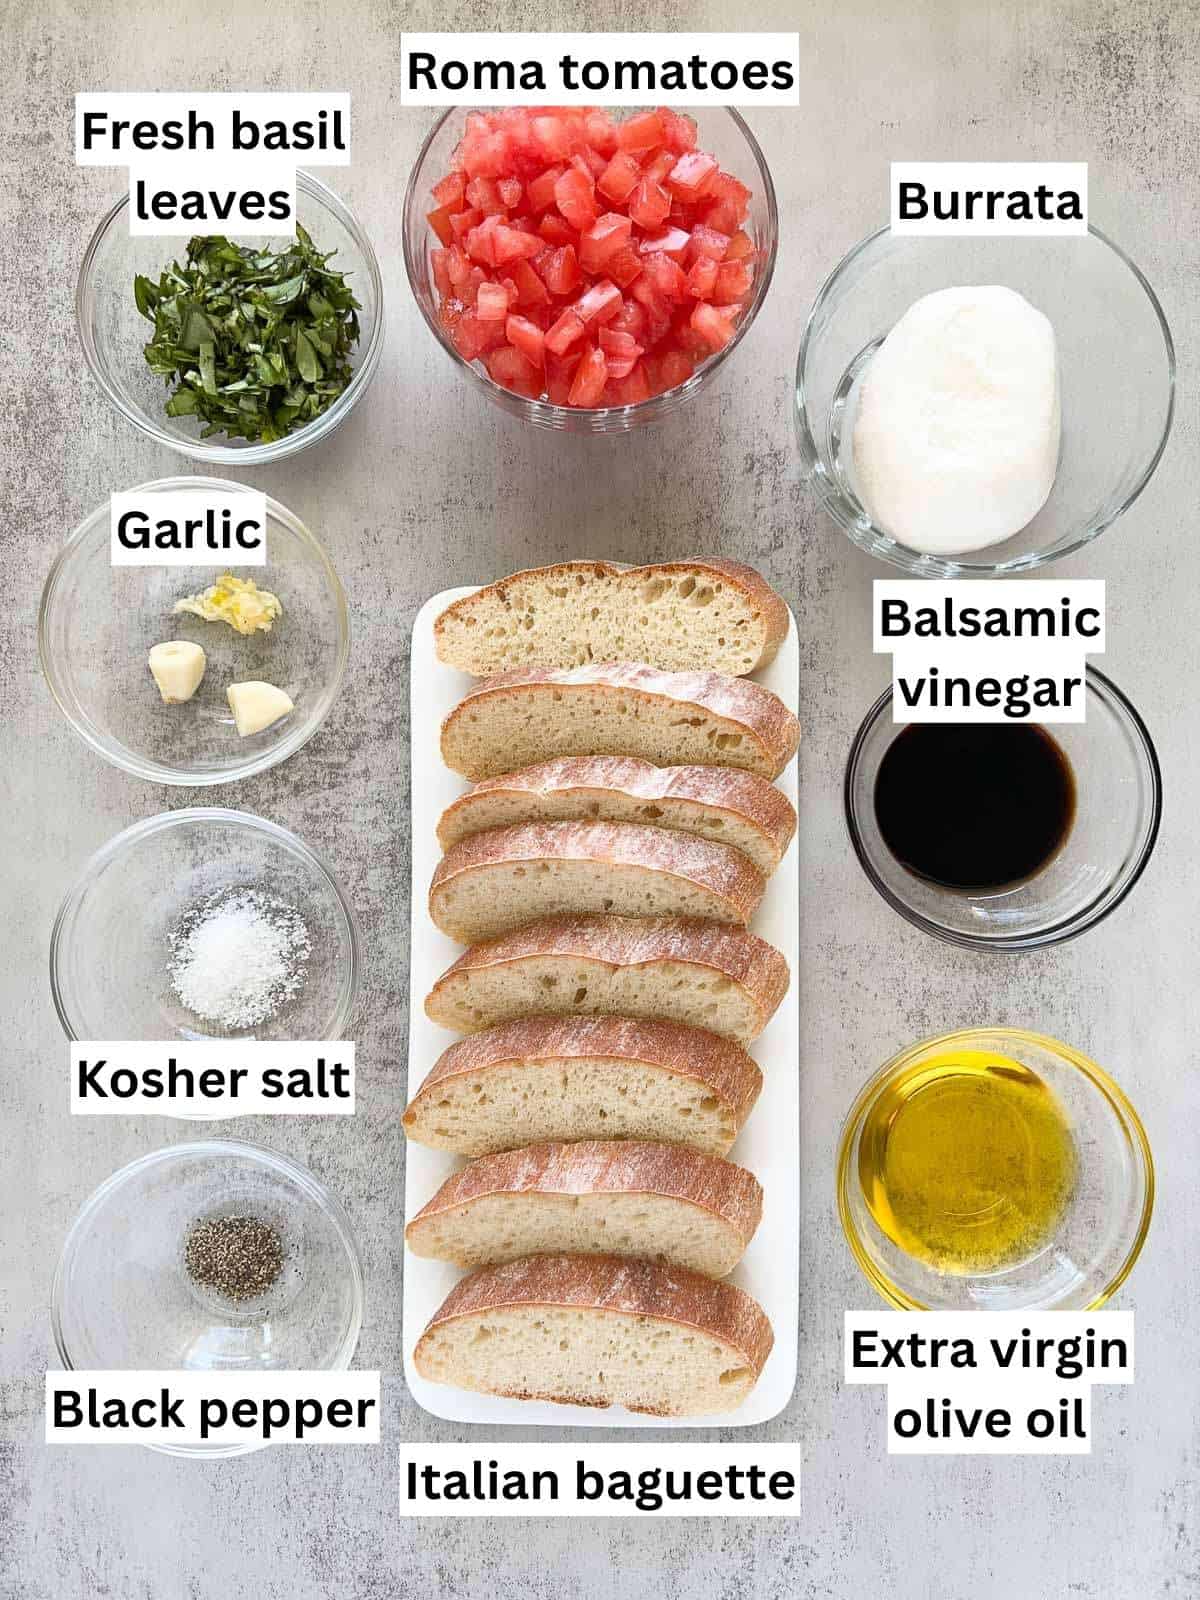 The ingredients to make burrata bruschetta.